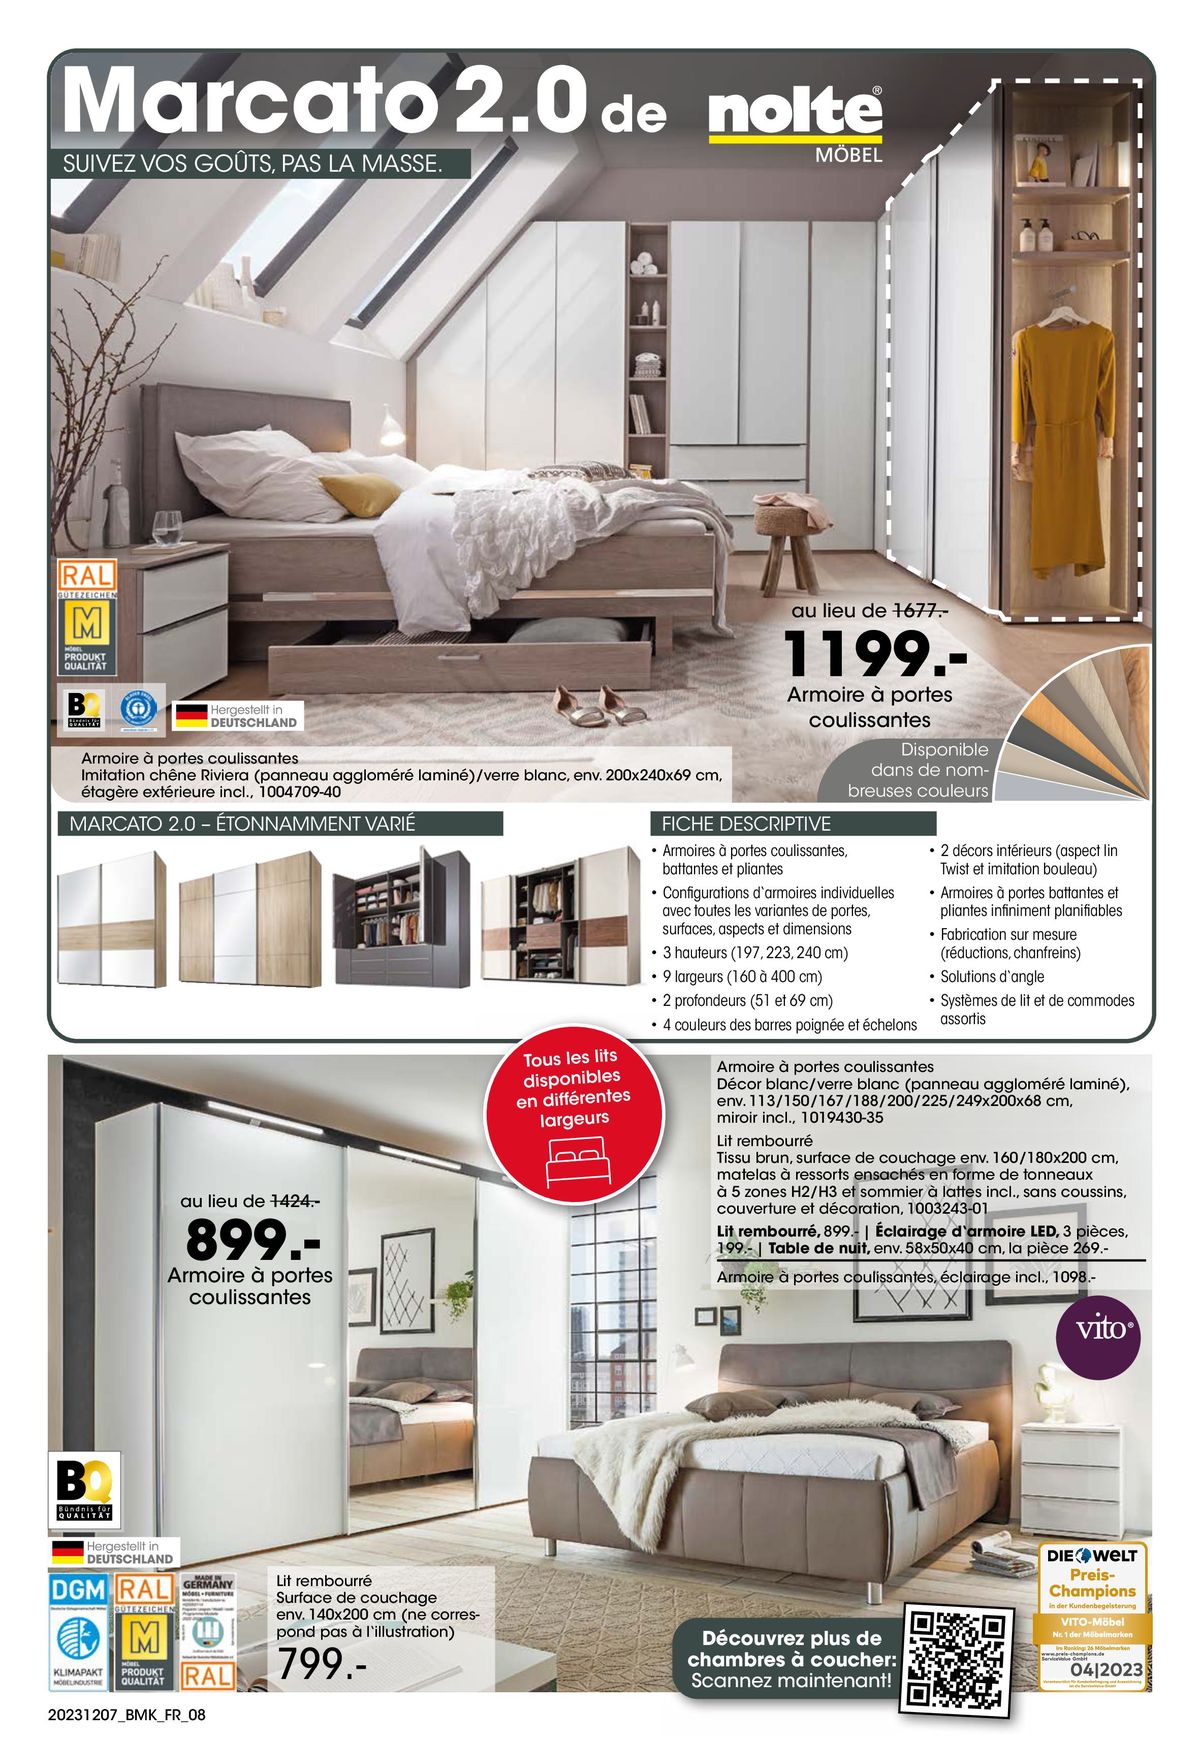 Catalogue Votre nouveau chez-vous avec GARANTIE-MEILLEUR PRIX, page 00008